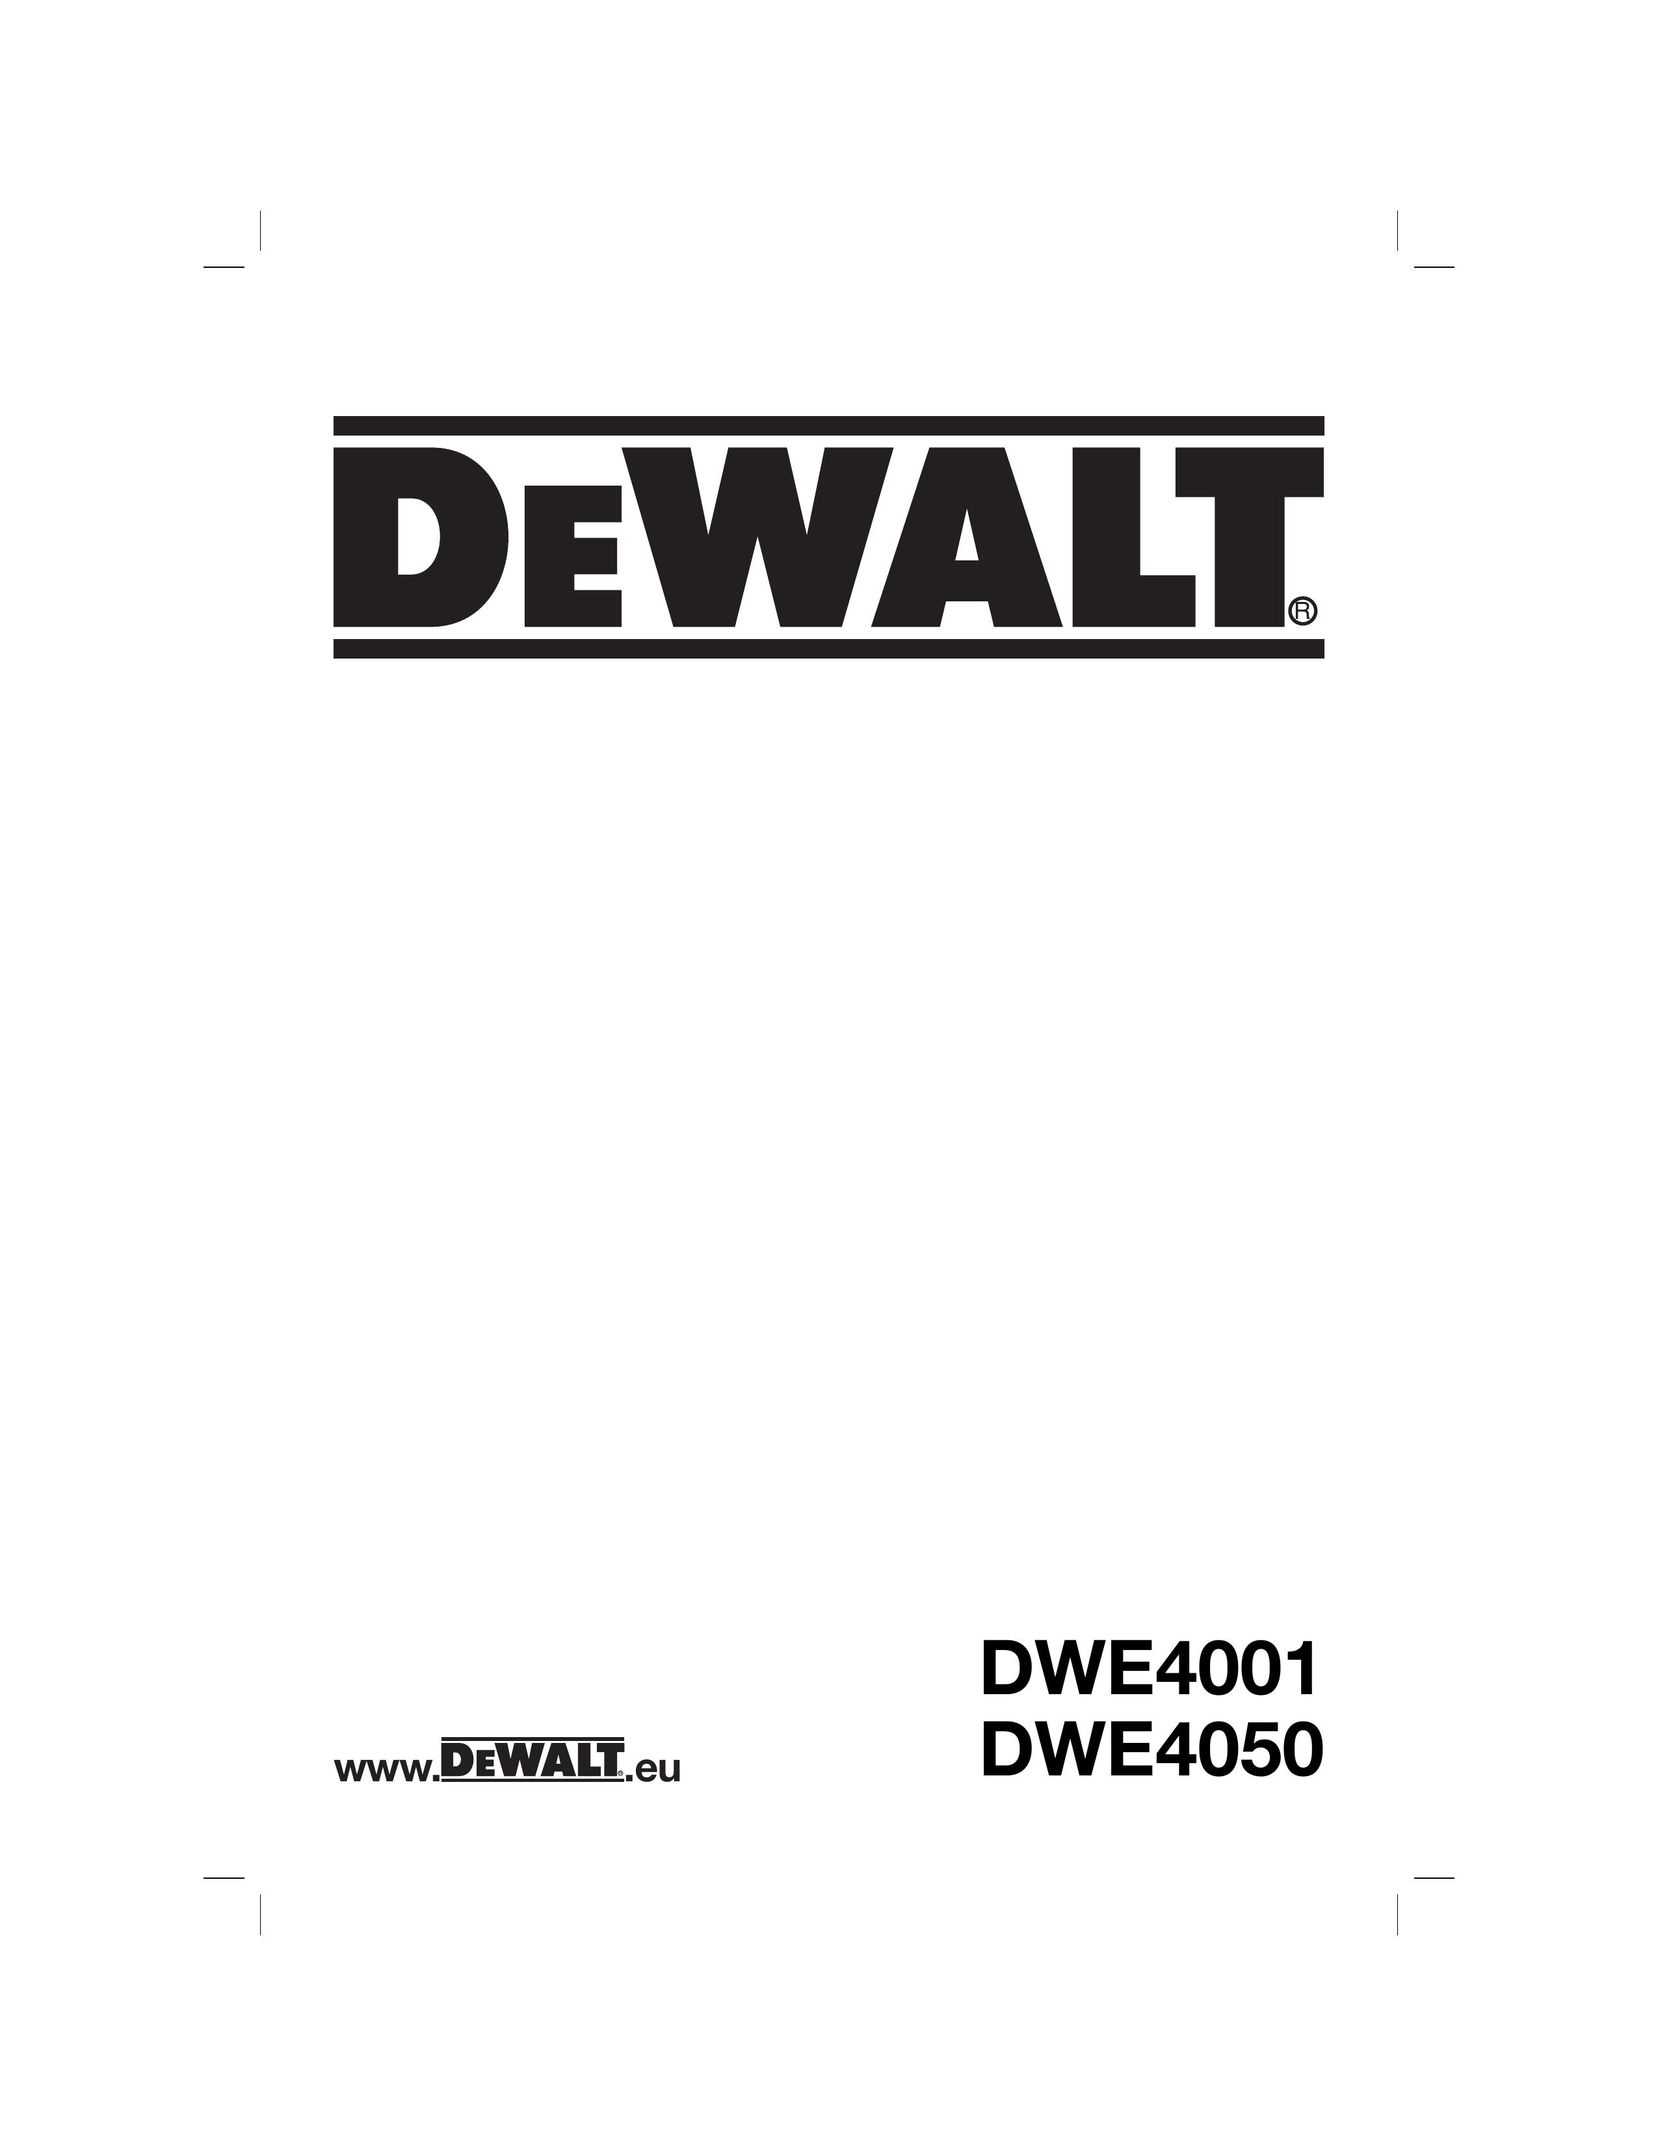 DeWalt DWE4001 Grinder User Manual